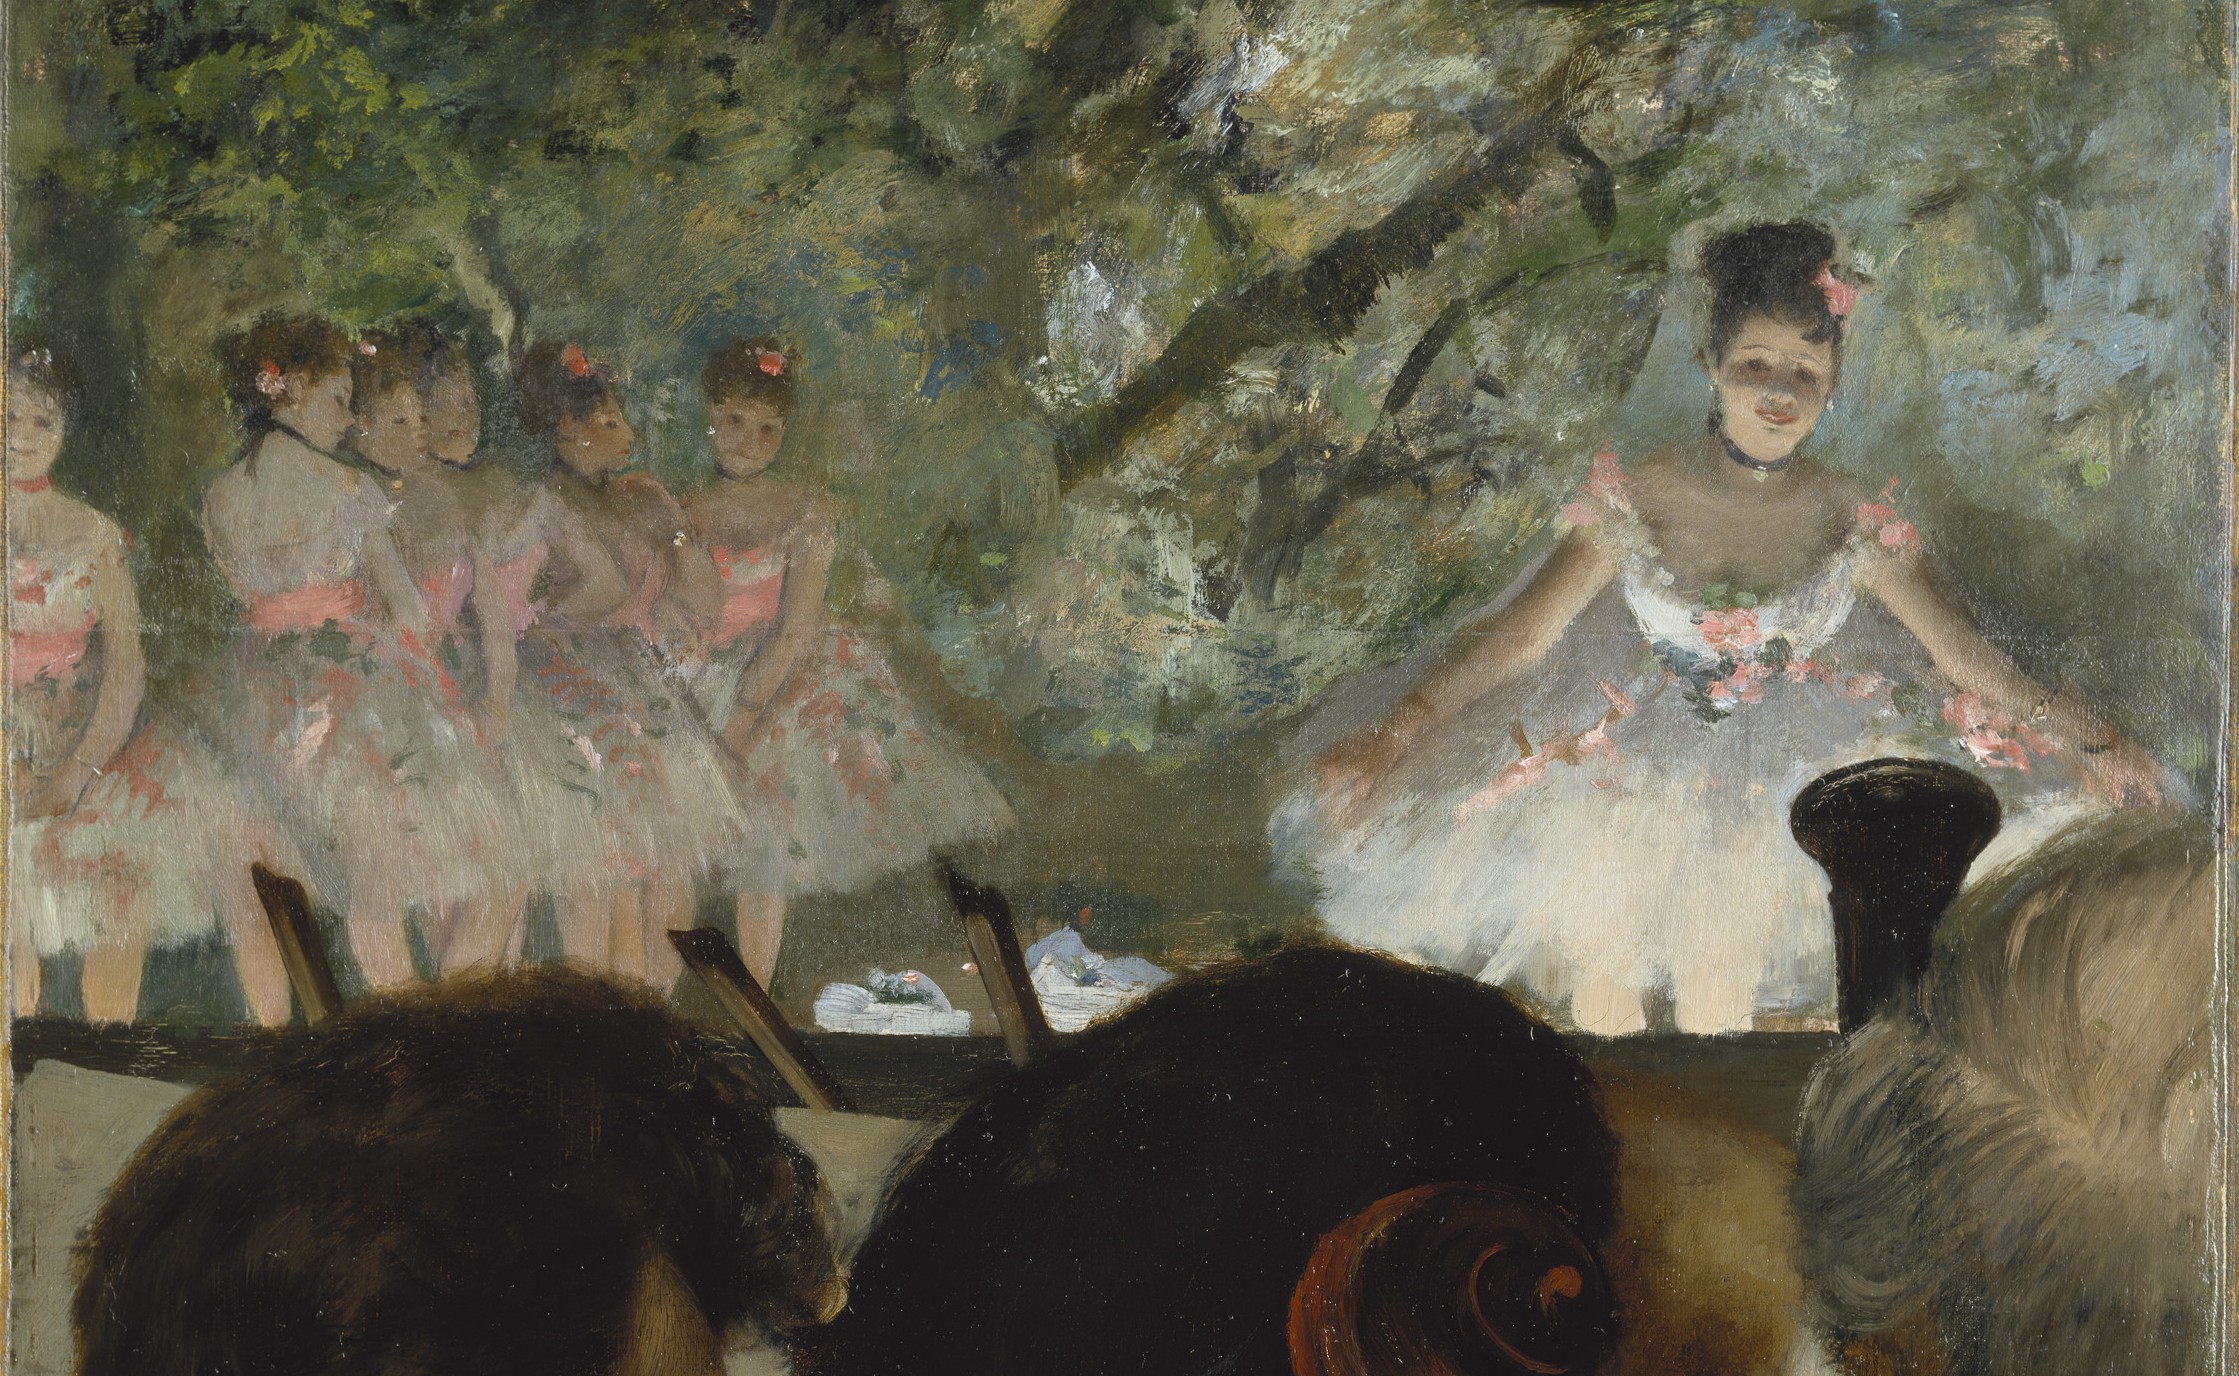 Dancing Degas